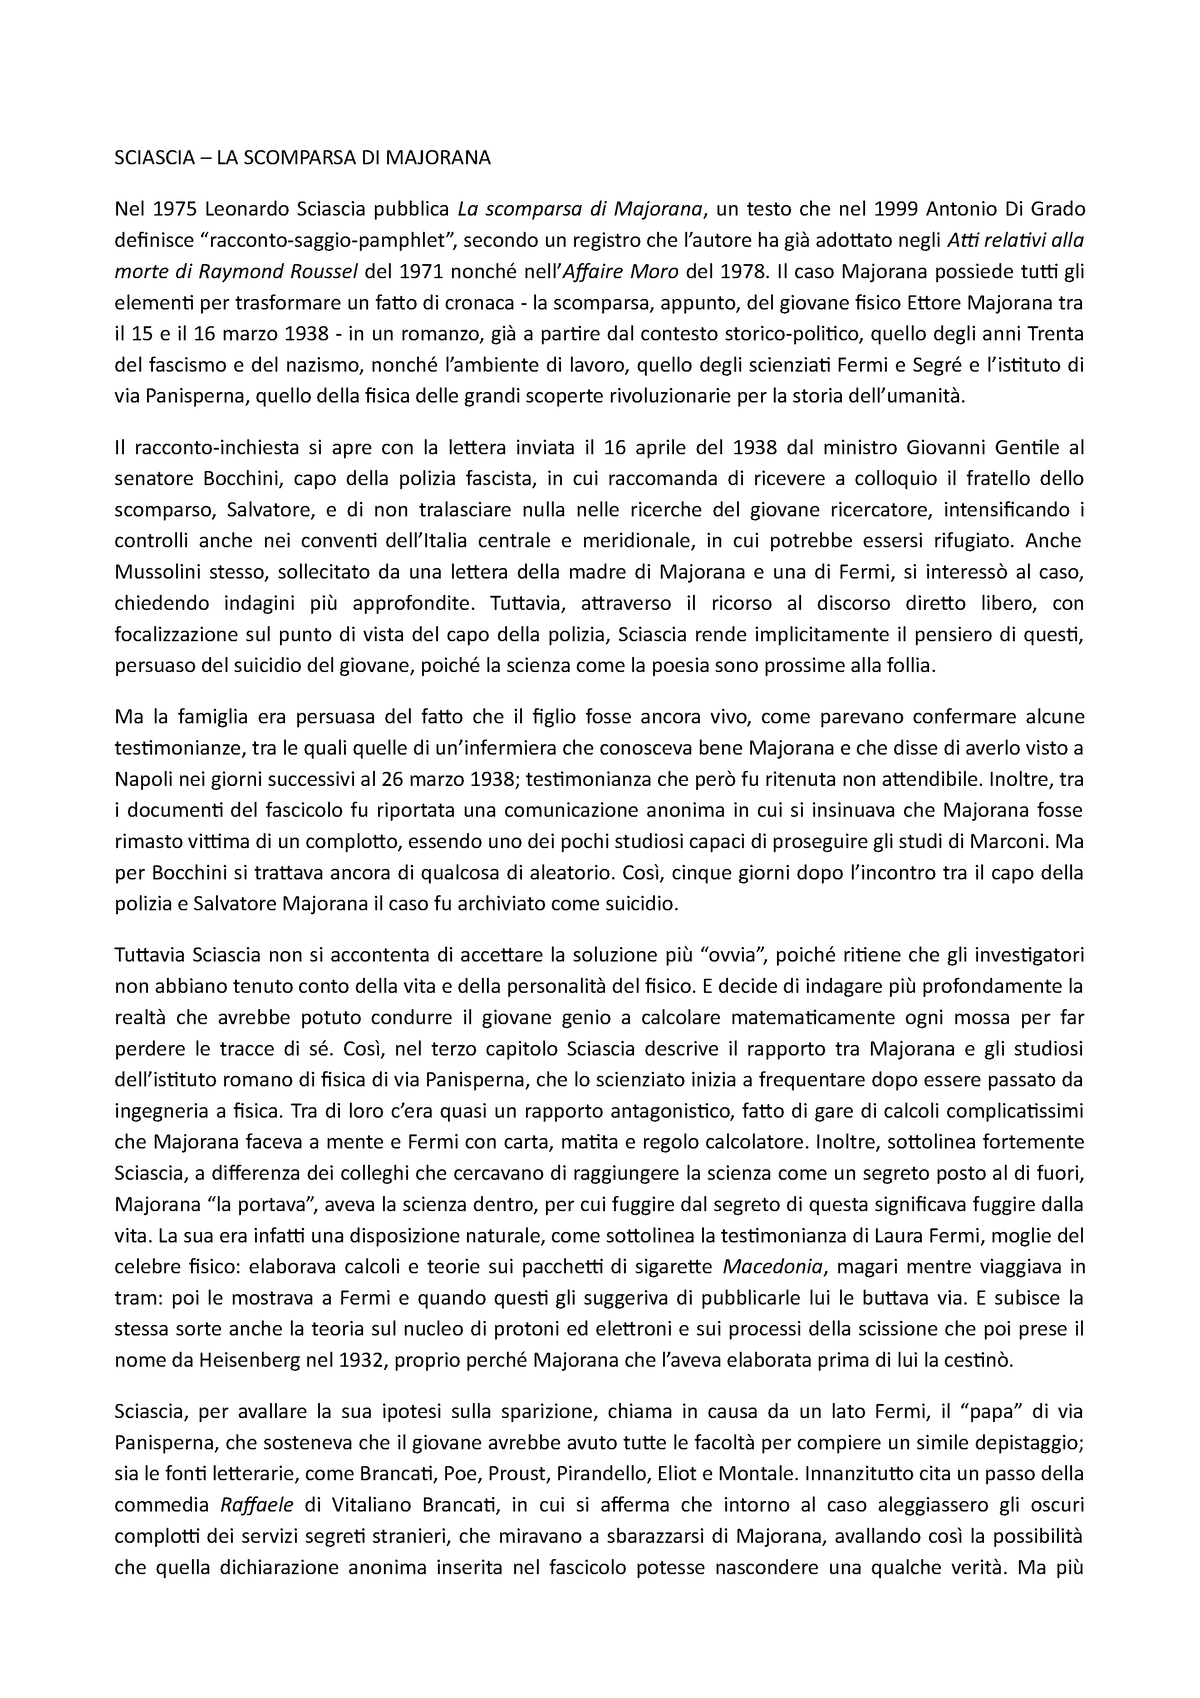 Sciascia - LA Scomparsa DI Majorana - Letteratura italiana 1 - UniNa -  Studocu